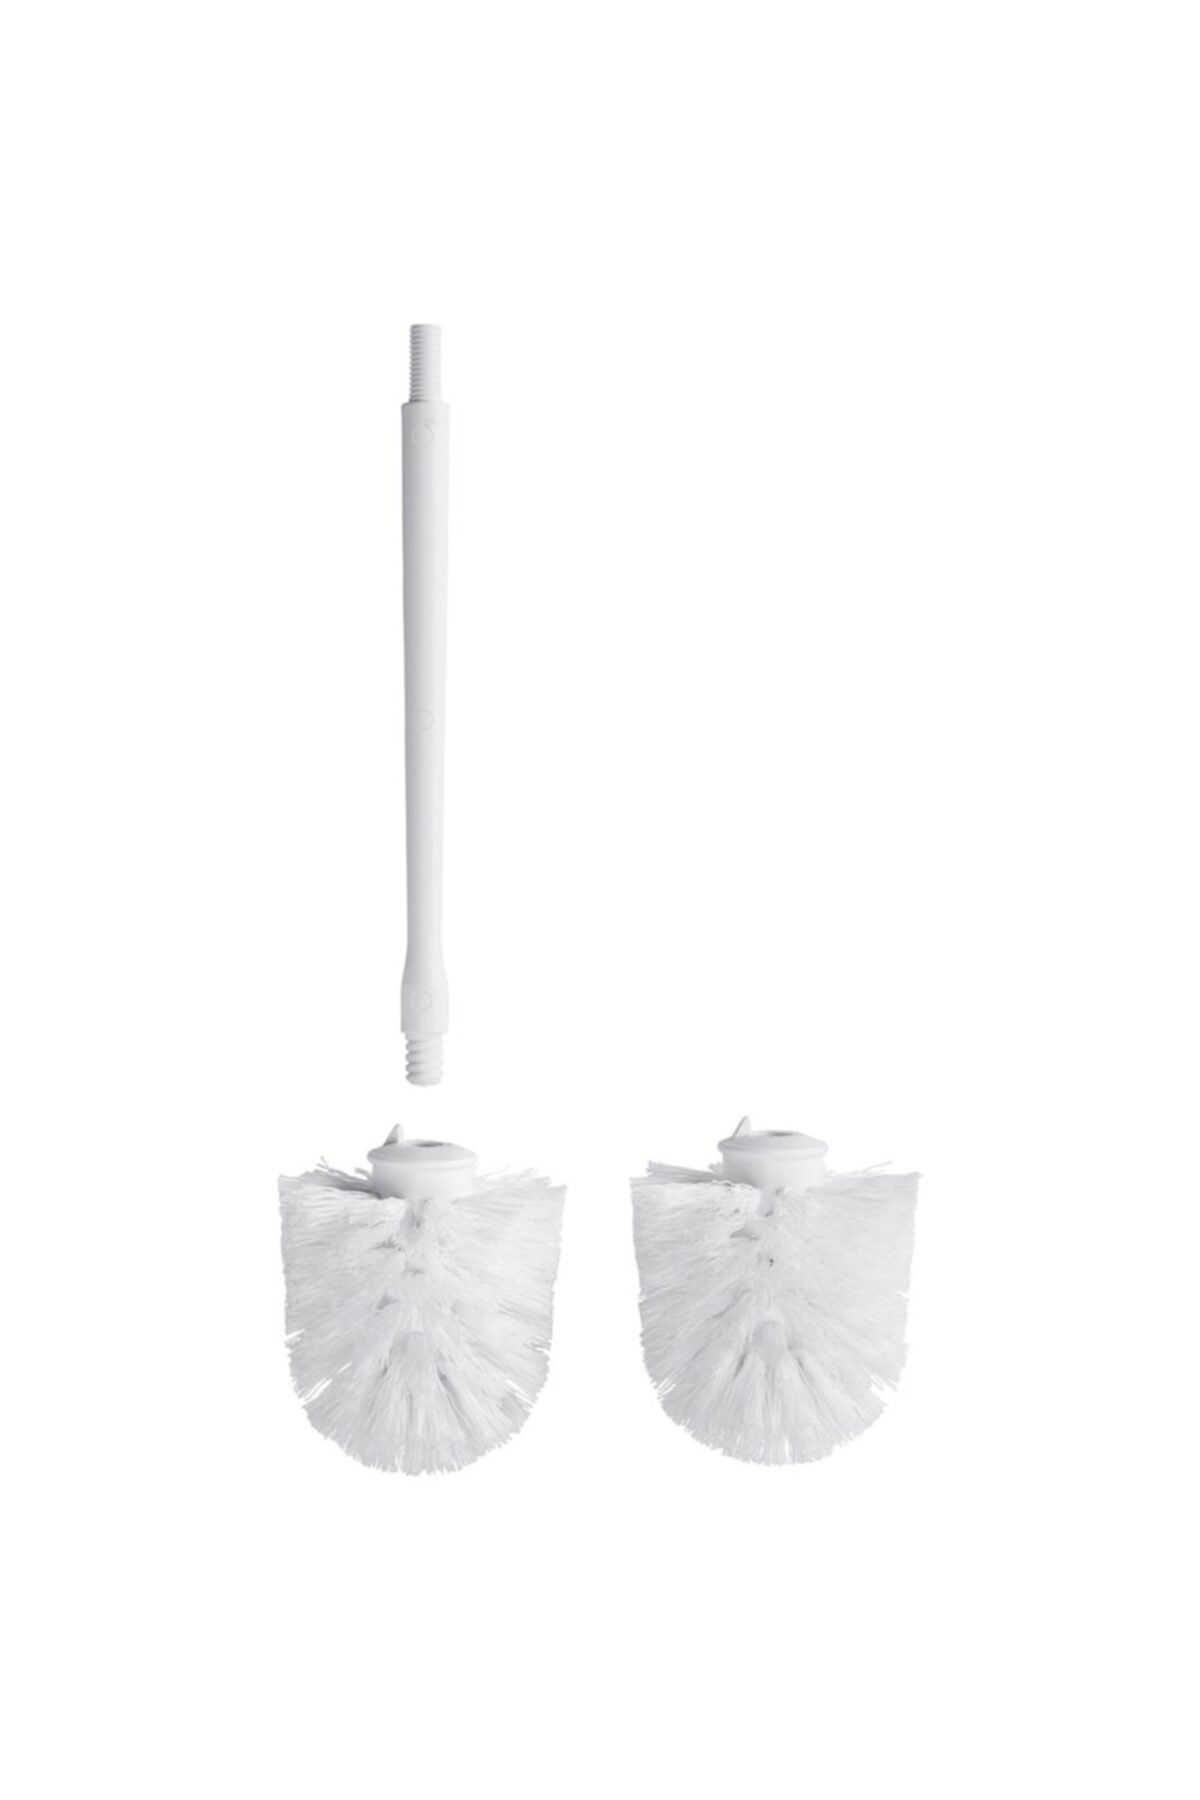 IKEA Tronnan 2 Adet Yedek Fırça Tuvalet Fırçası Yedeği 2 Adet Beyaz